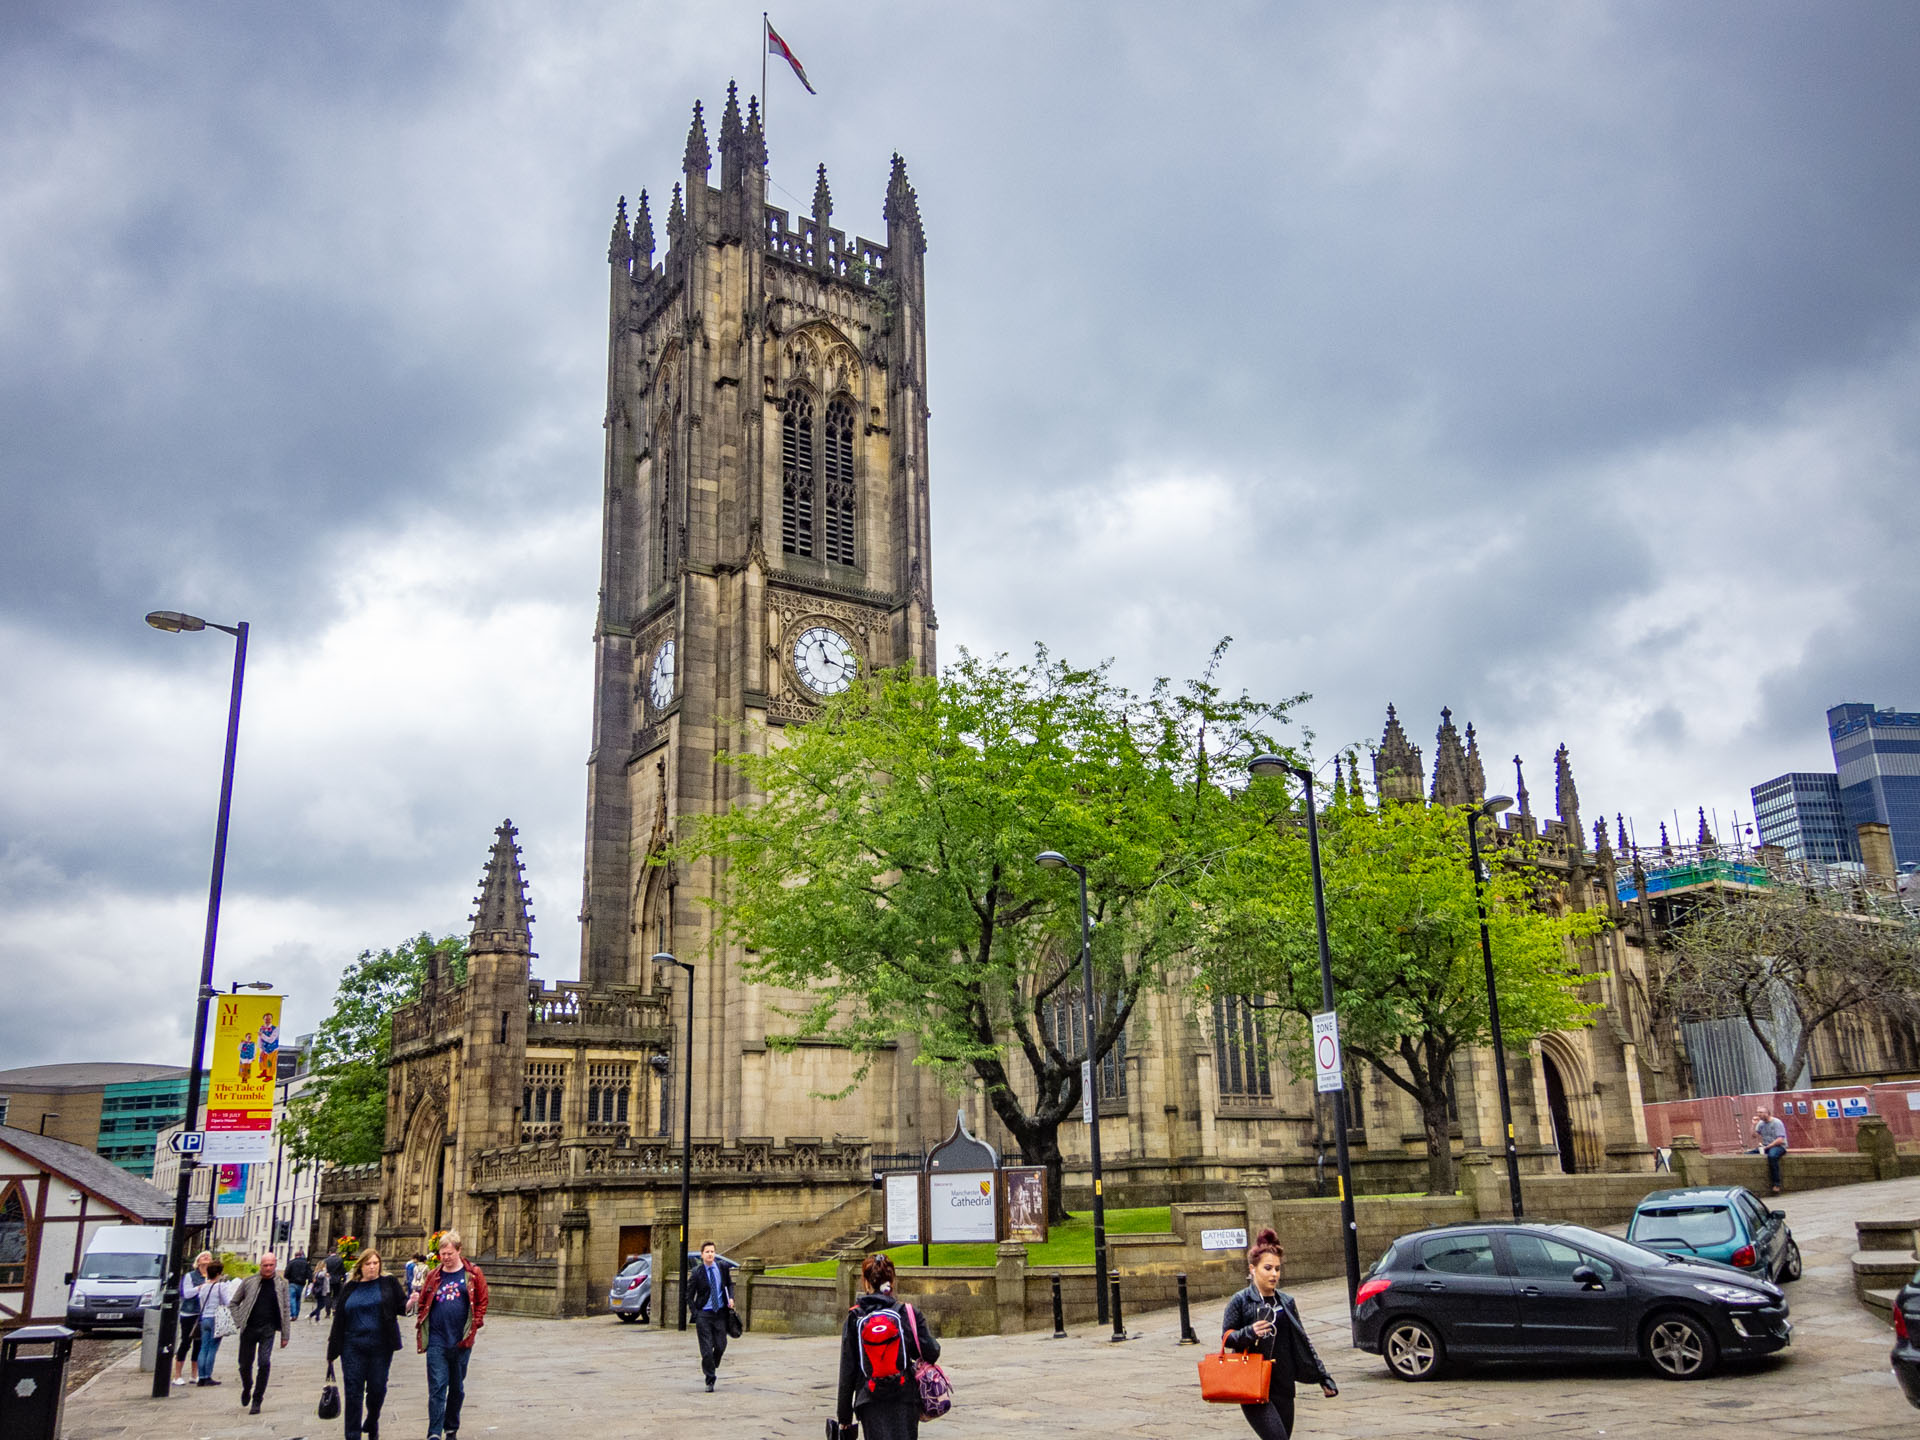 De kathedraal van Manchester met boom ervoor op een bewolkte dag, gezien vanaf overzijde van de straat